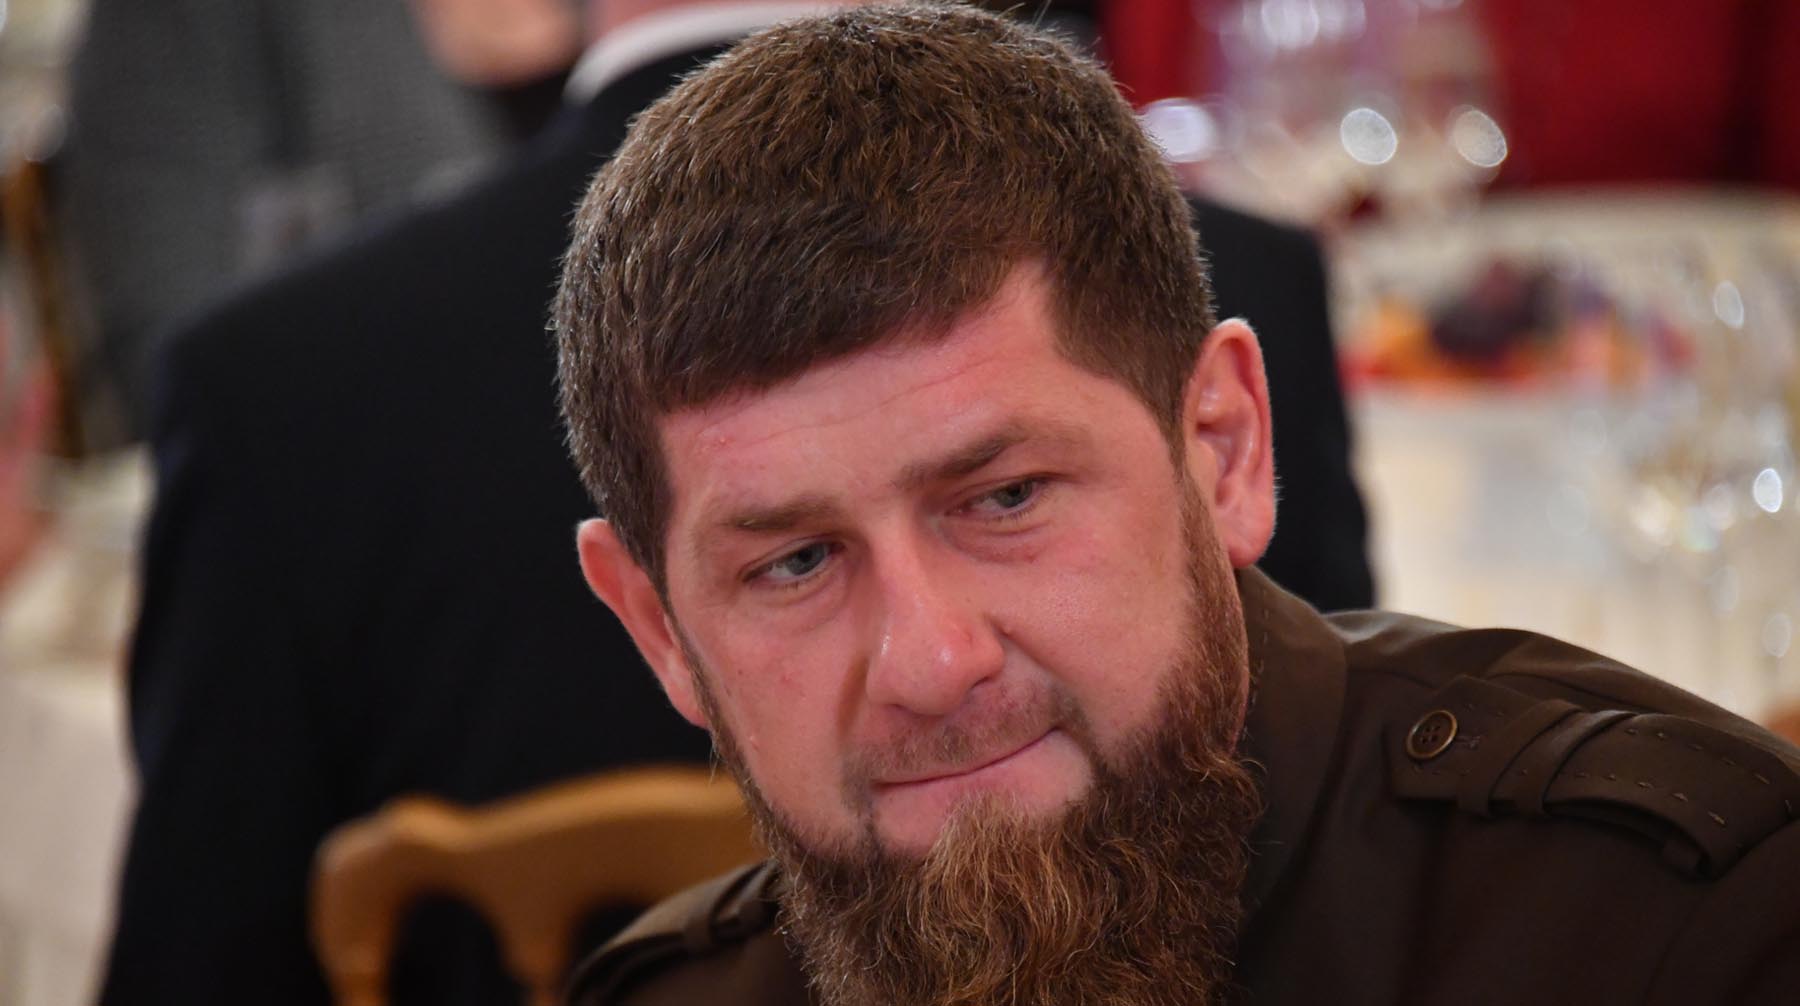 Глава Чечни также отметил, что эту тему поднял не кто-нибудь, а спортивный телеканал Фото: © Global Look Press / Комсомольская правда